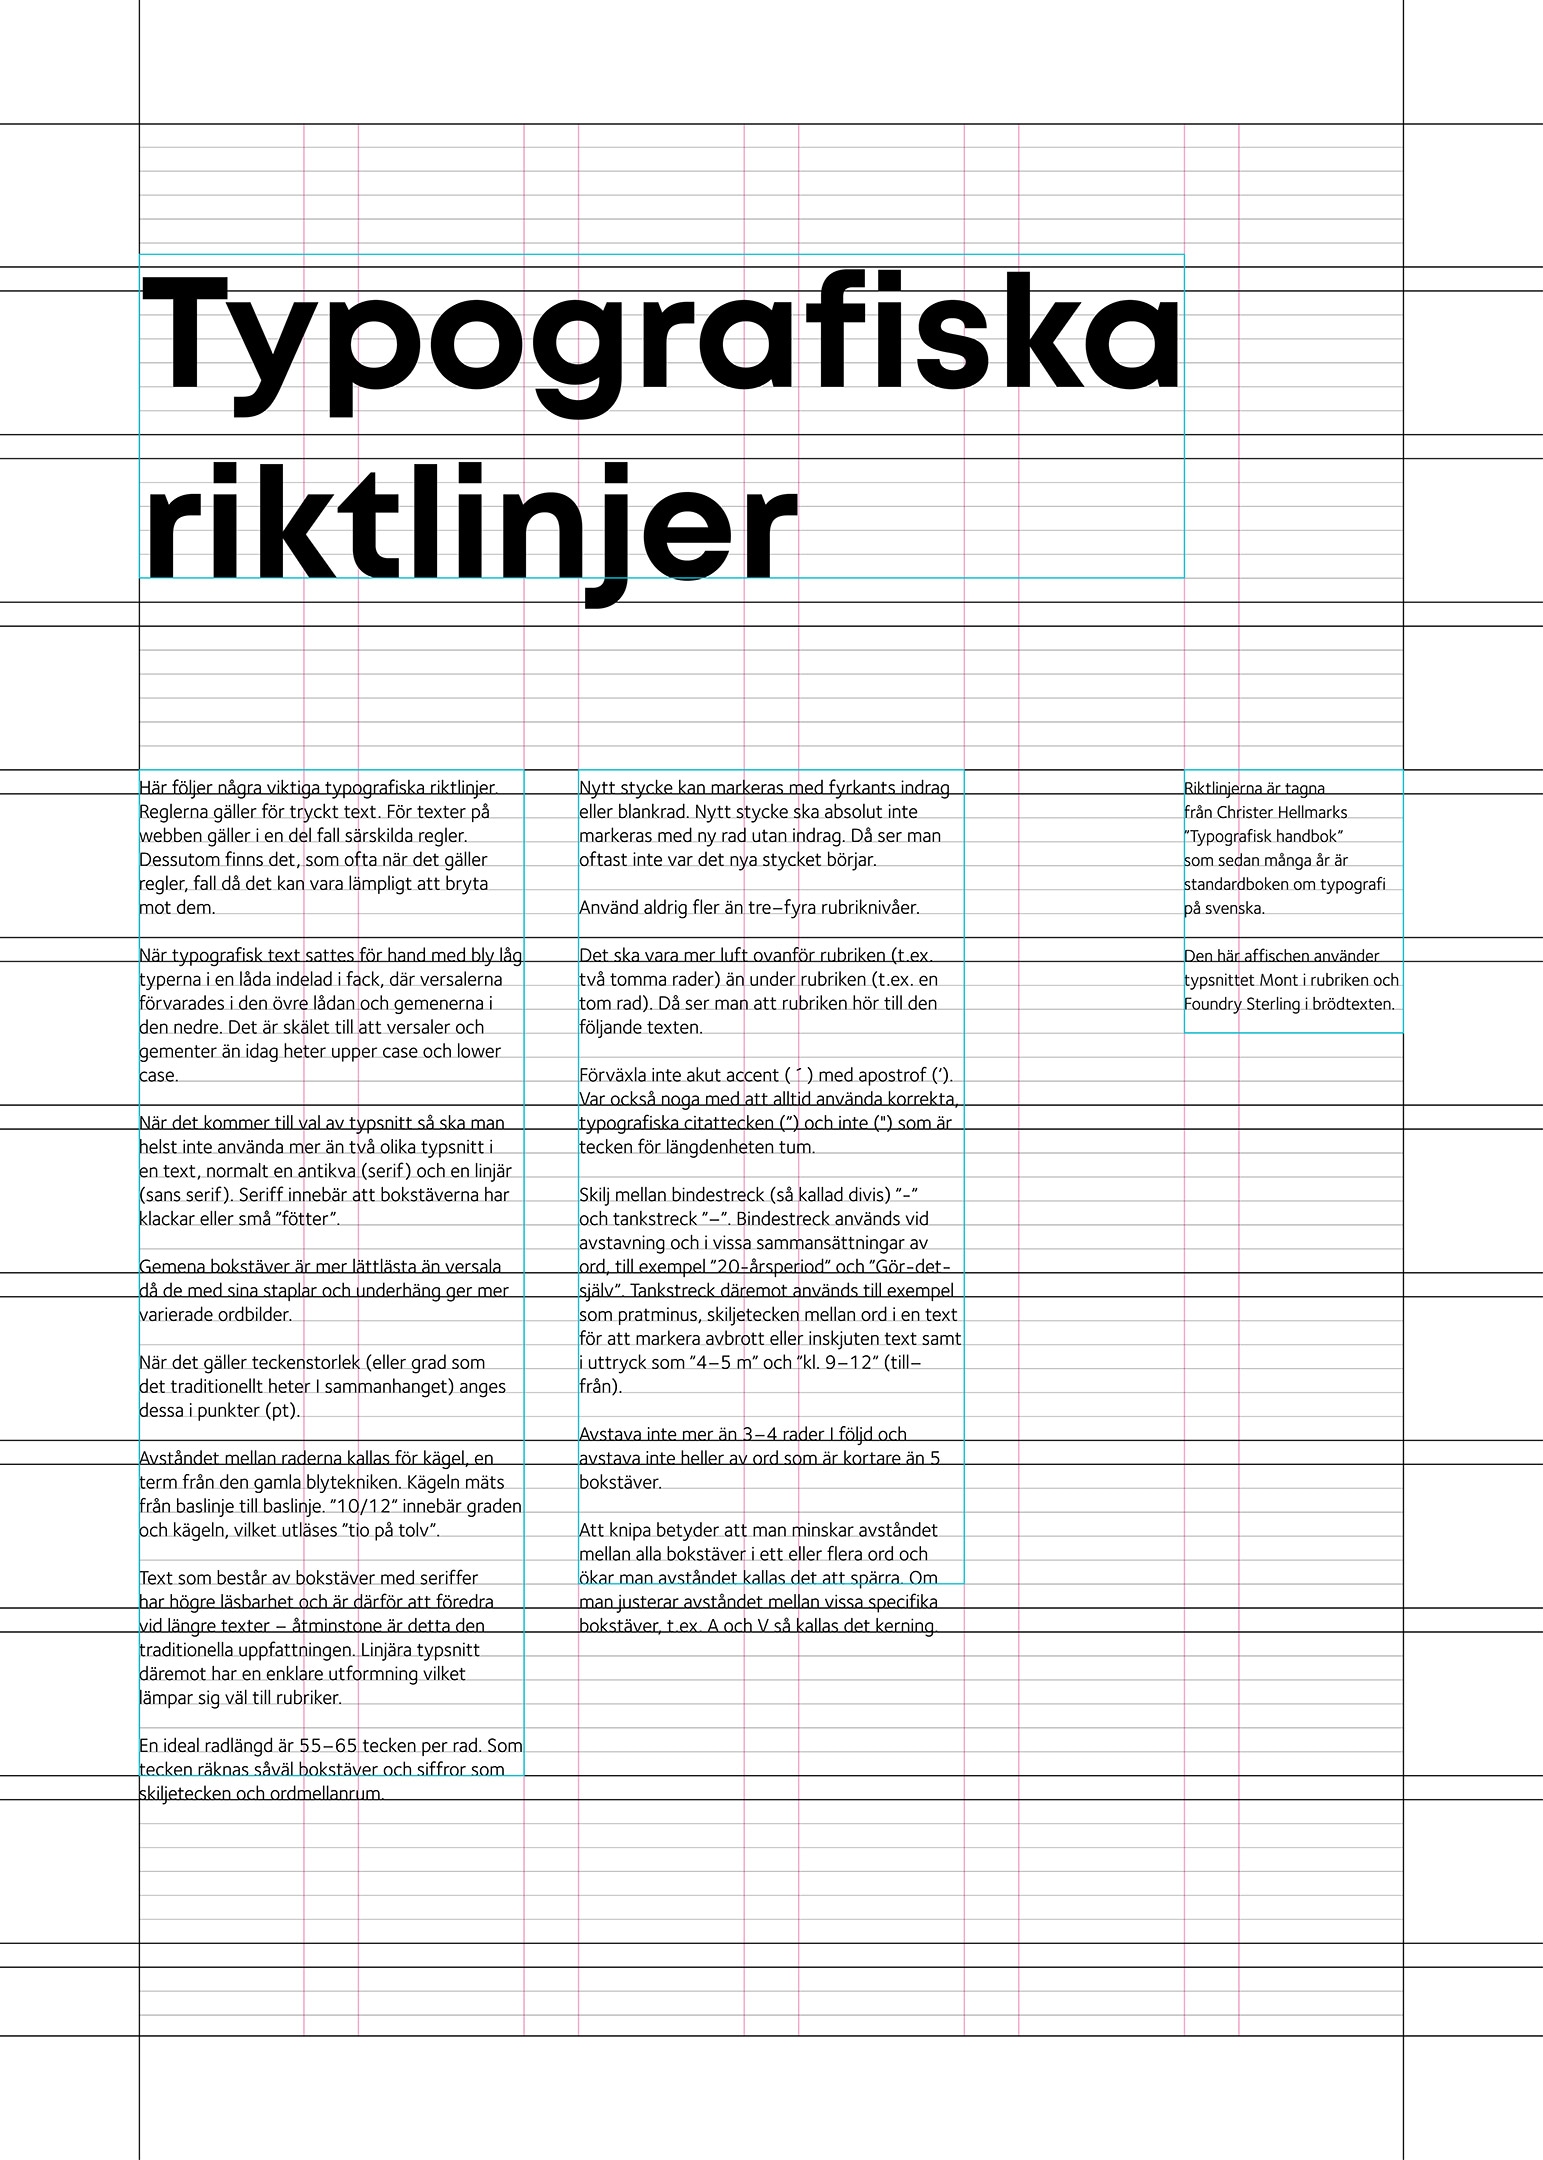 Typografiska riktlinjer poster